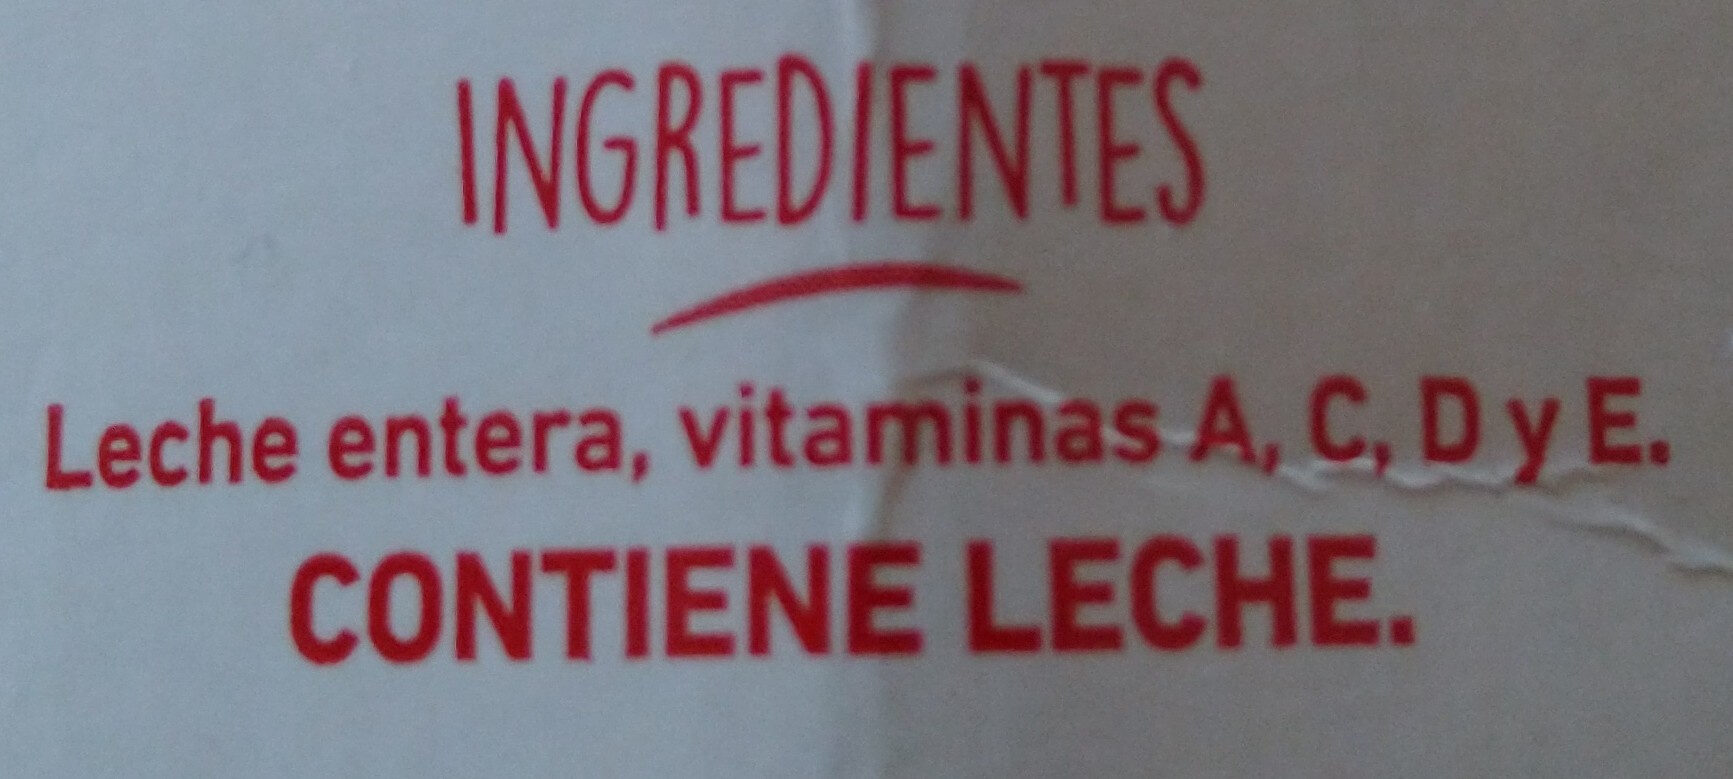 Leche Clásica - Ingredients